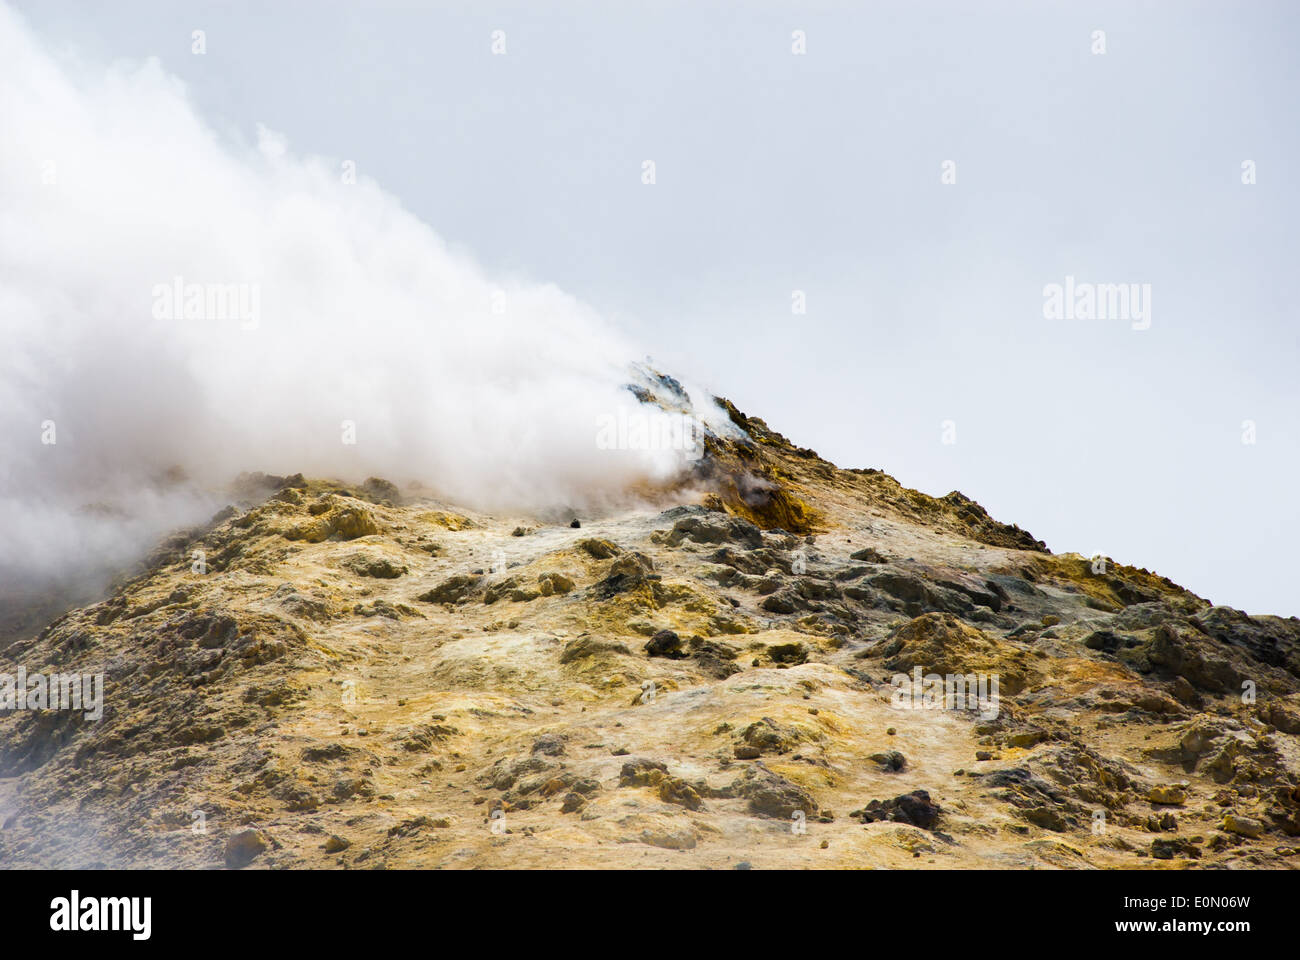 Sur le sommet de l'etna la roche est couverte de soufre et est devenu jaune, nuage de gaz toxique se propager du cratère Banque D'Images